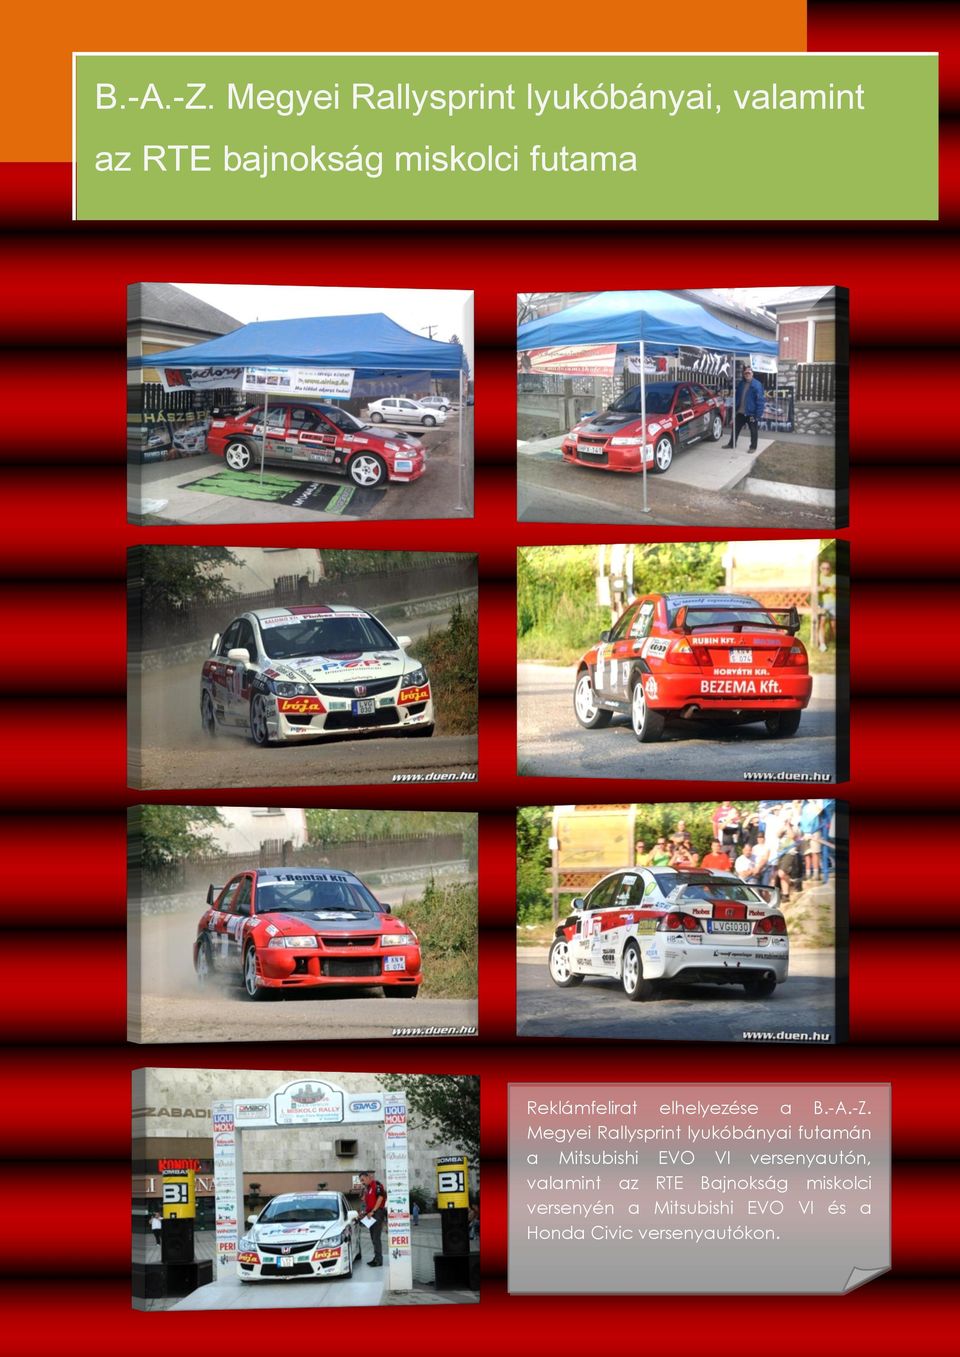 futama Reklámfelirat elhelyezése a  Megyei Rallysprint lyukóbányai